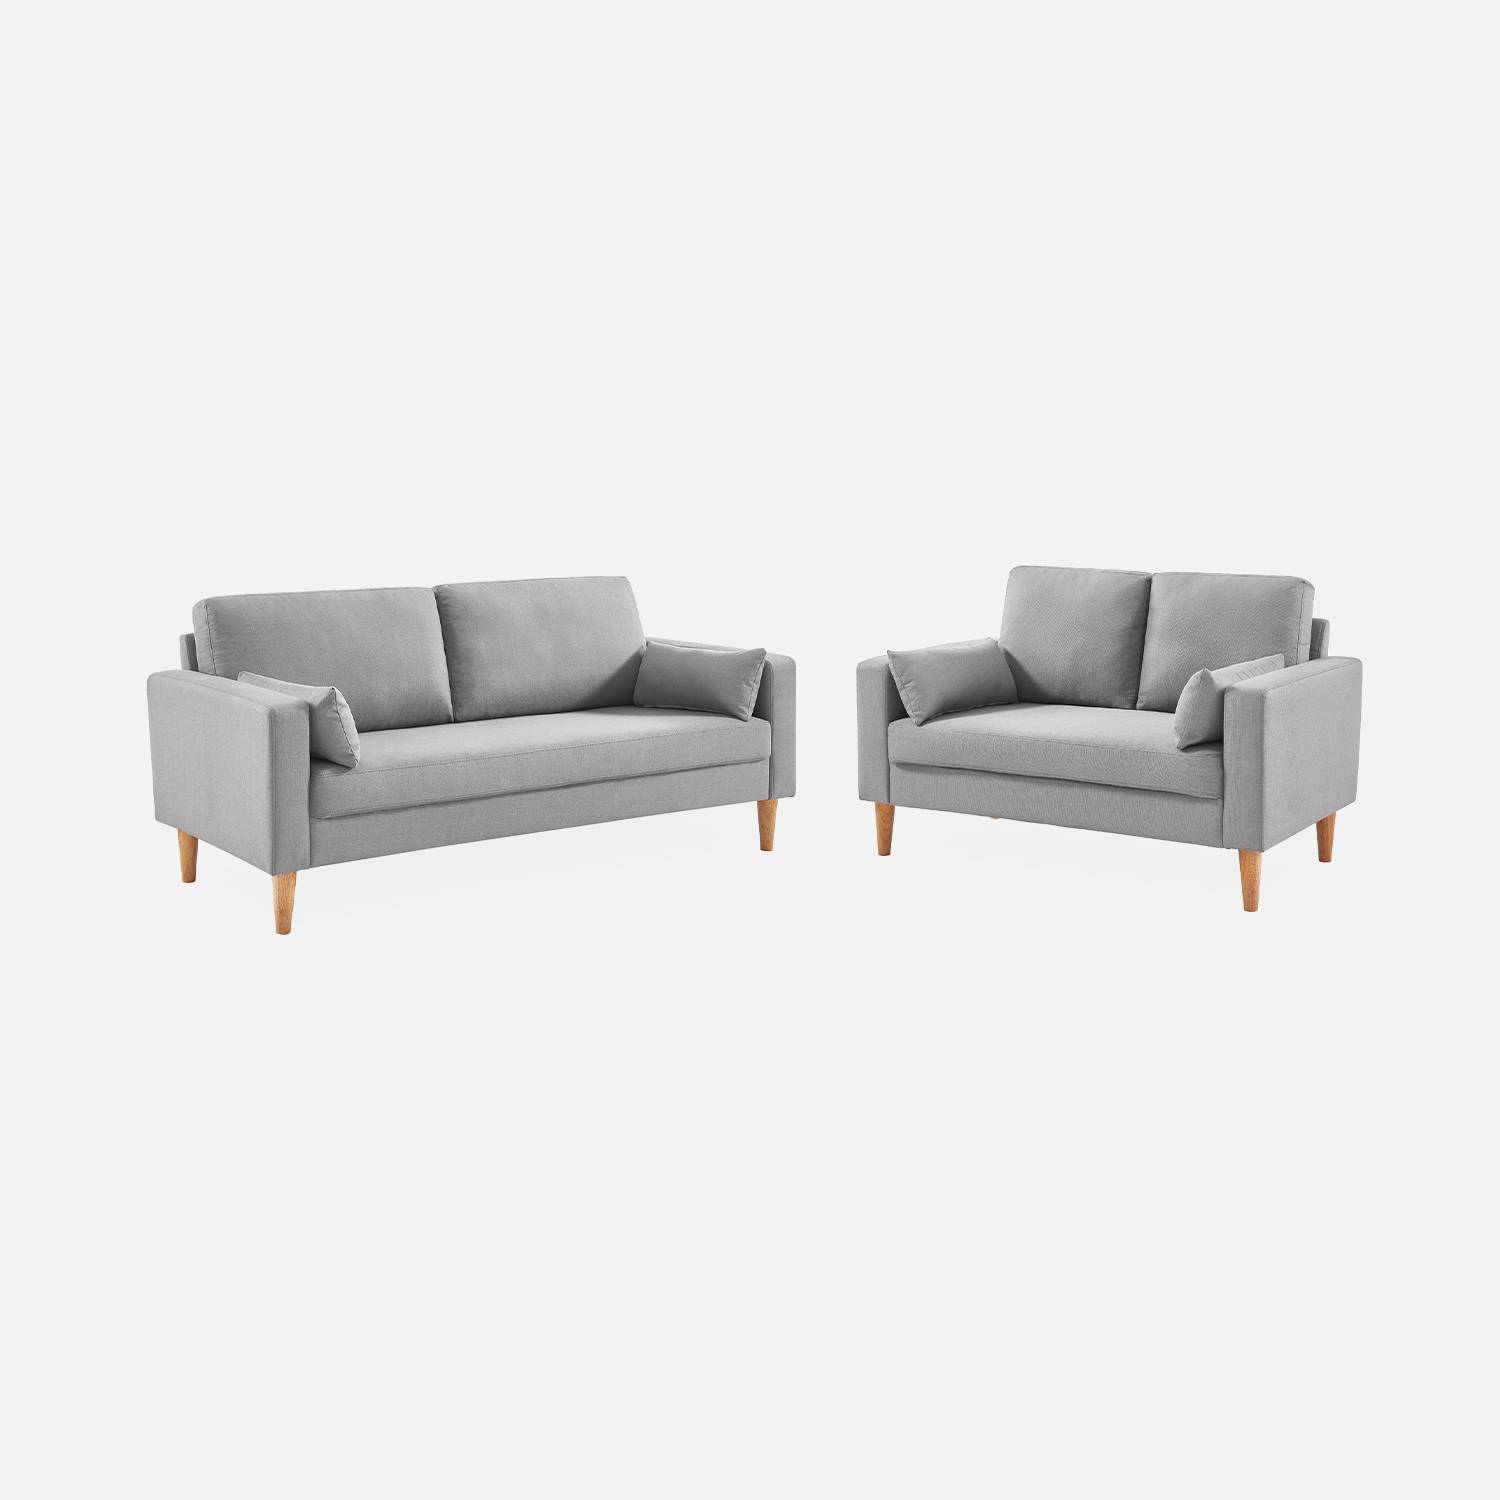 Canapé en tissu gris clair - Bjorn - Canapé 2 places fixe droit pieds bois, style scandinave   Photo5